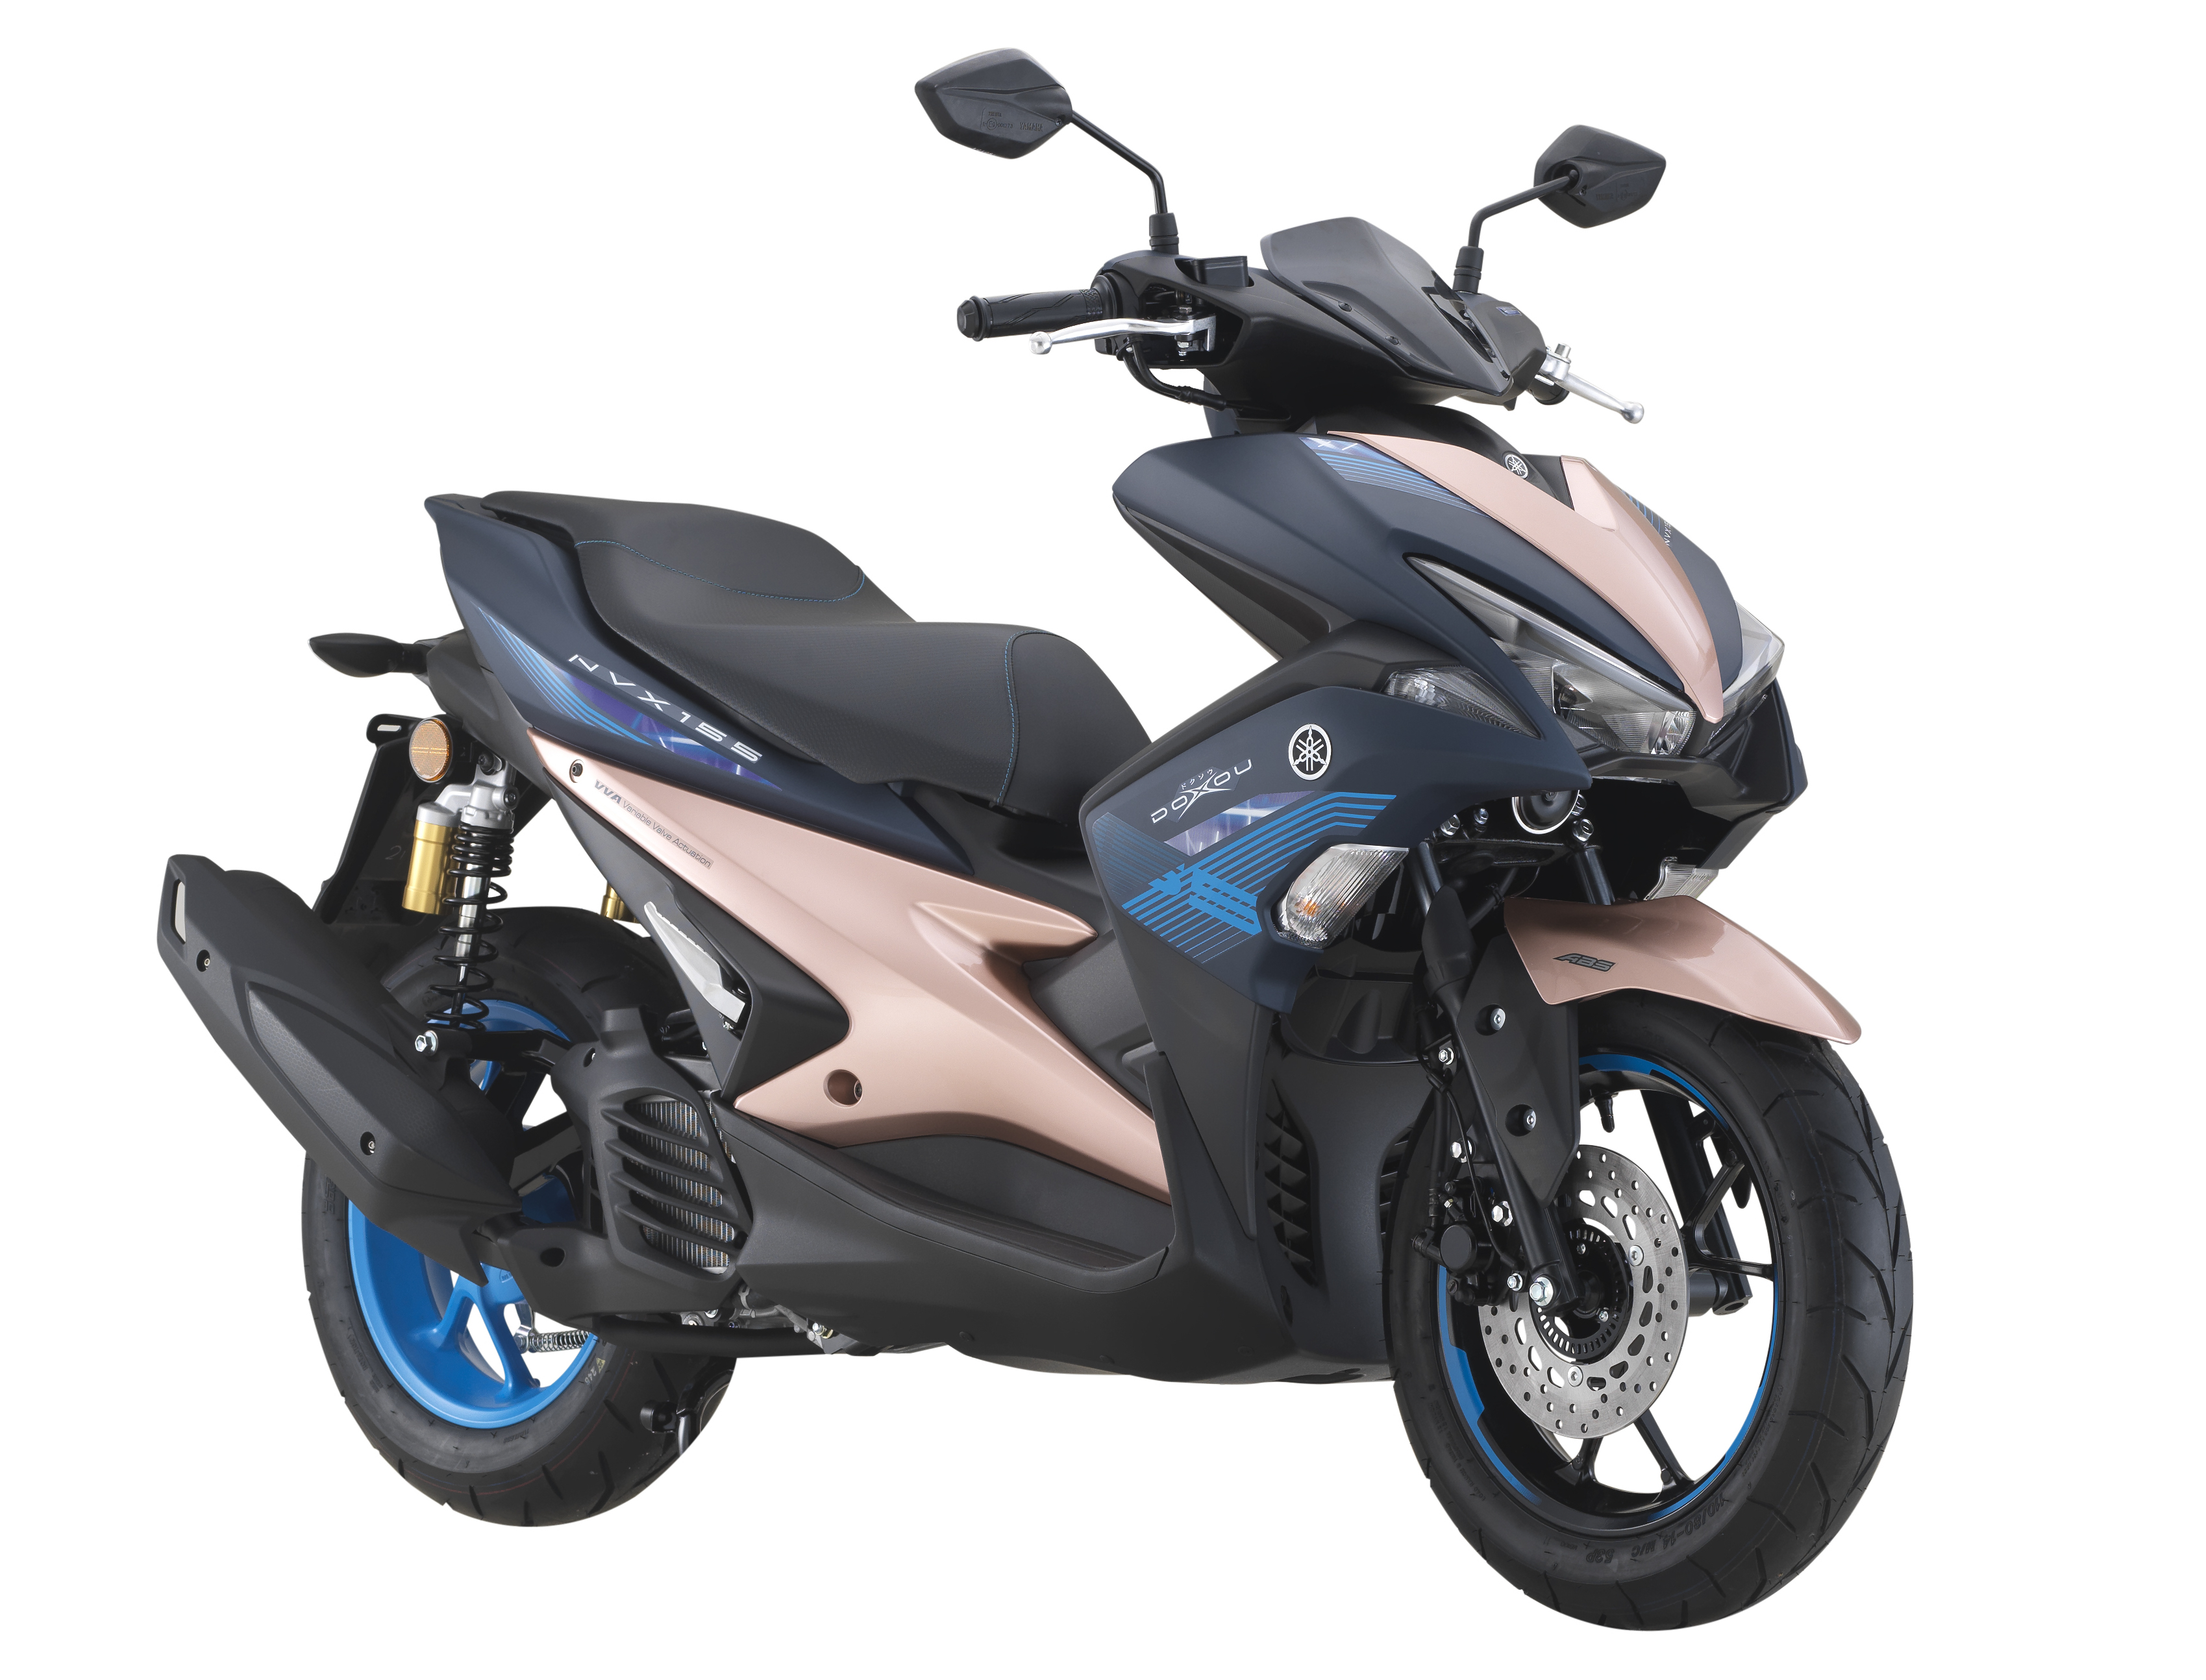 2019 Yamaha NVX 155 Doxou Malaysia price, RM10,688 2019 Yamaha NVX 155 ...